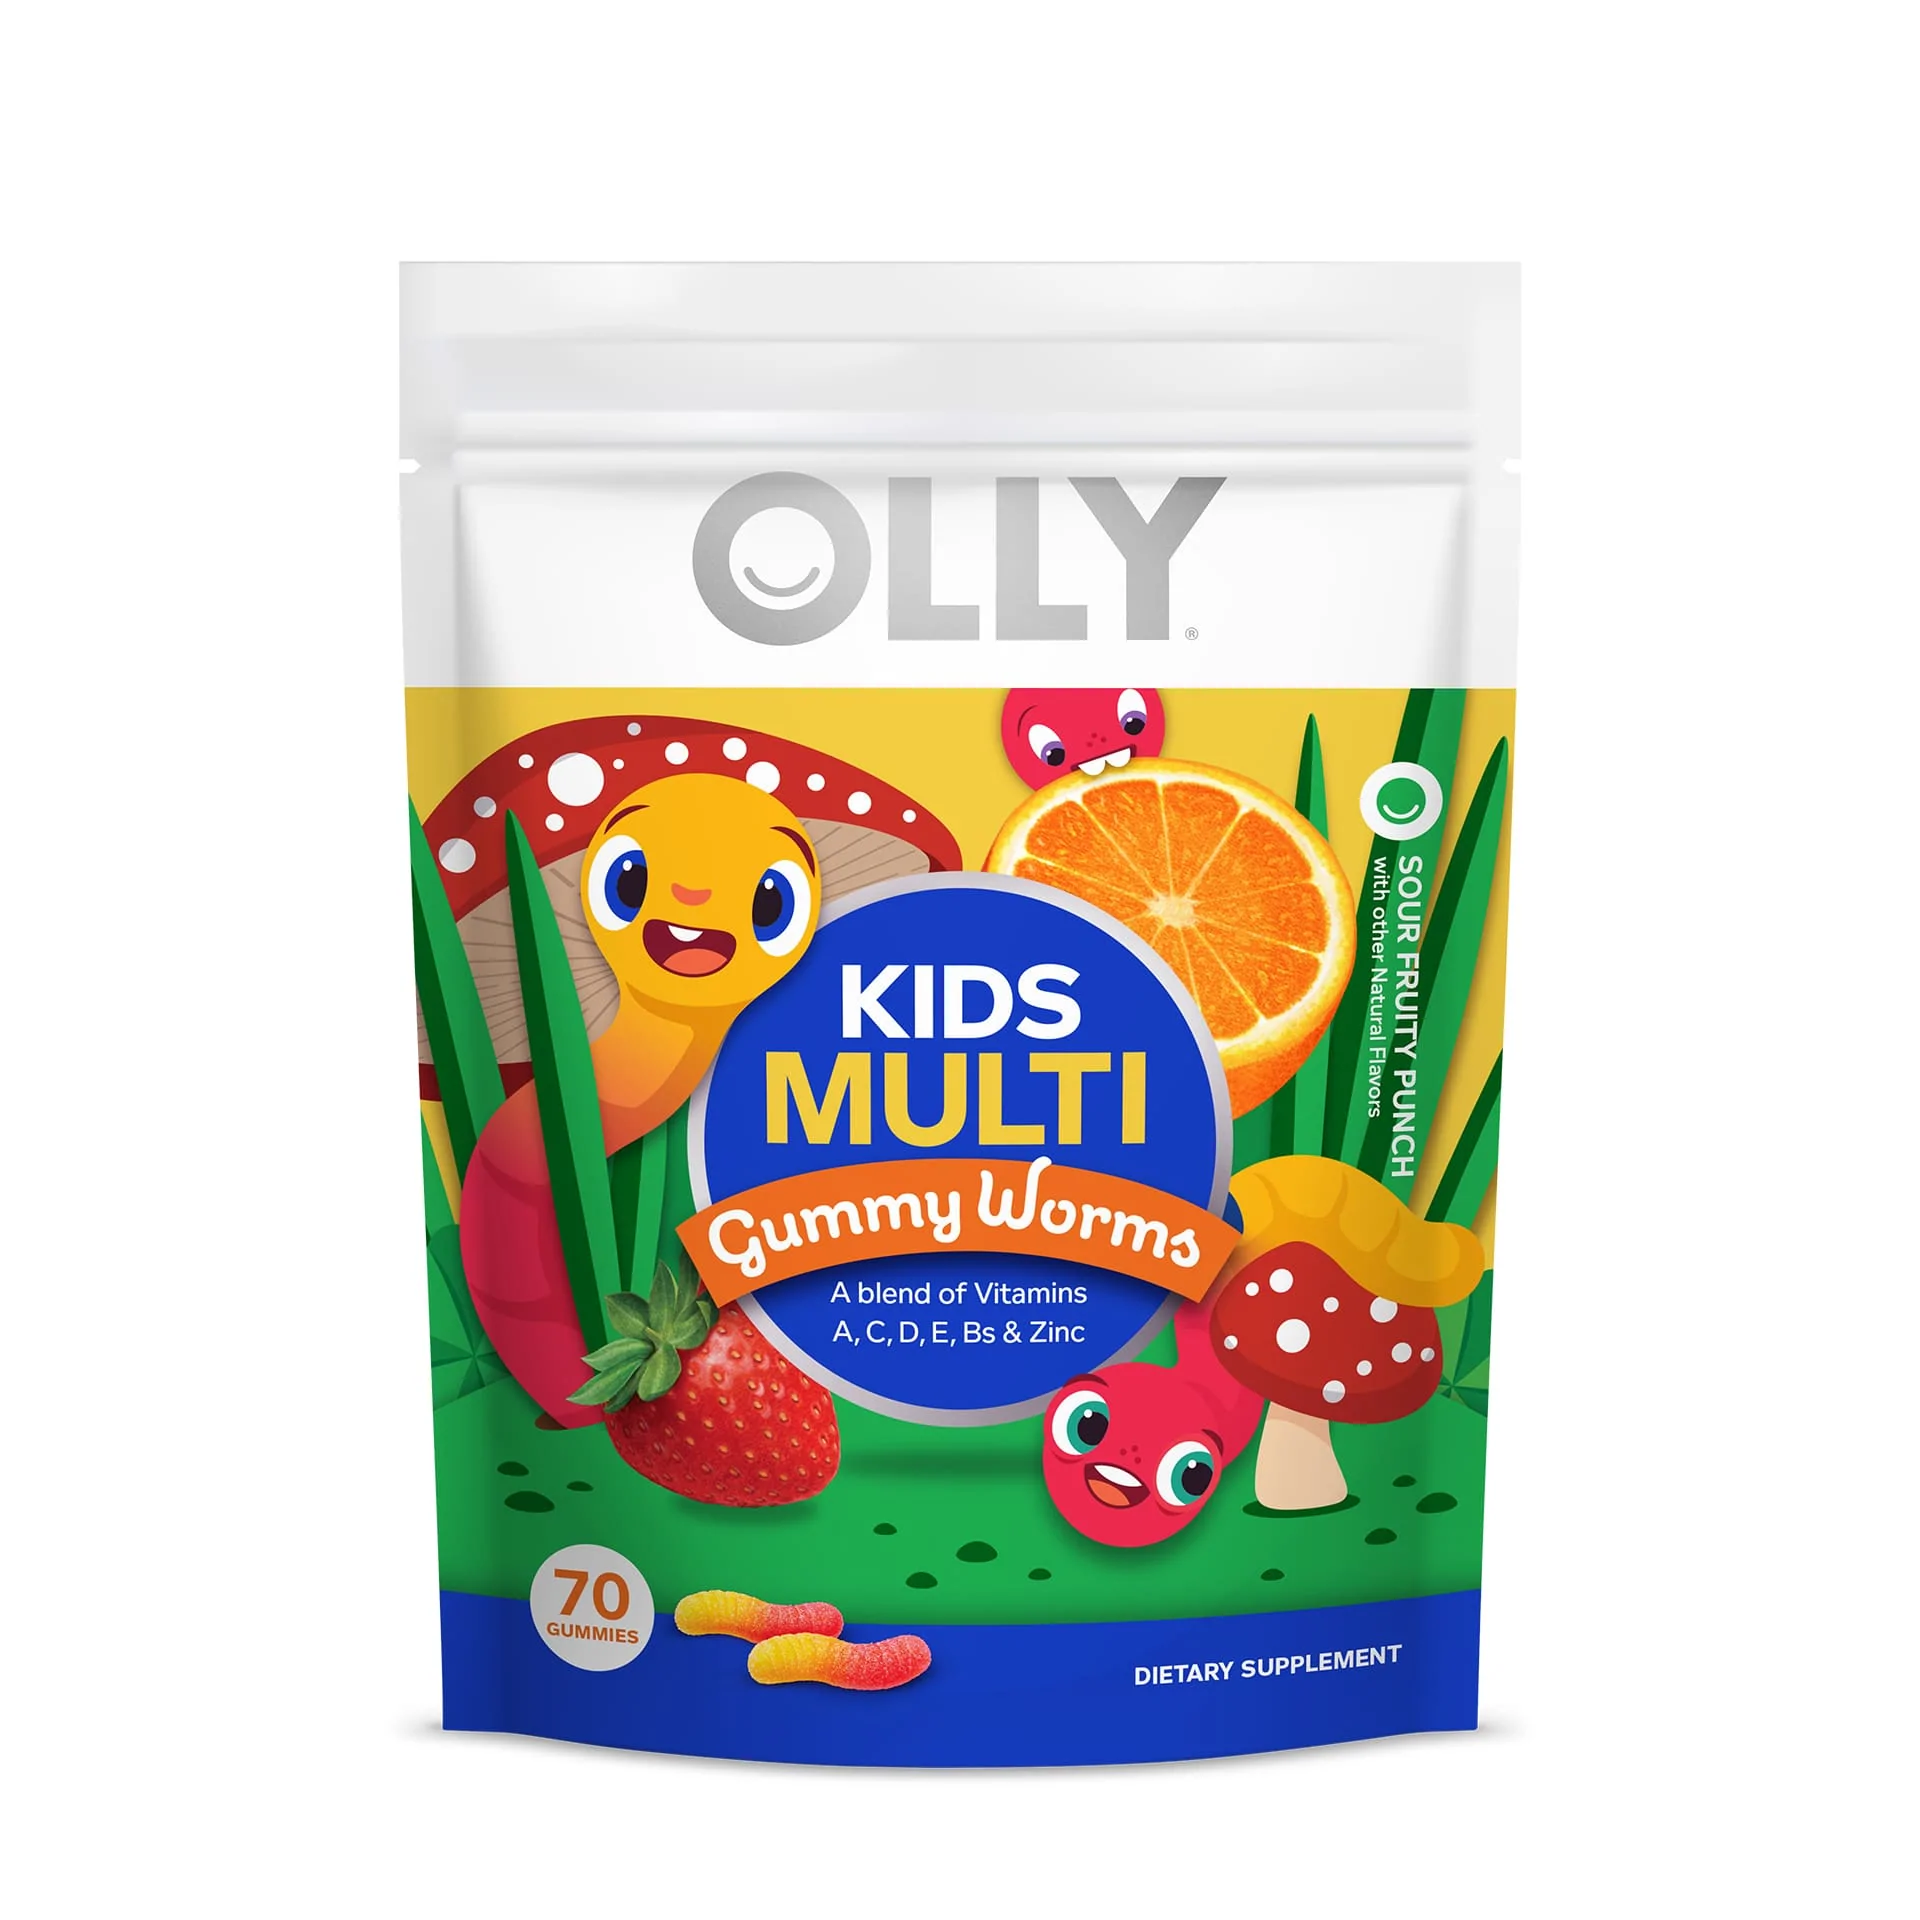 Kids Multivitamin Gummy Worms!